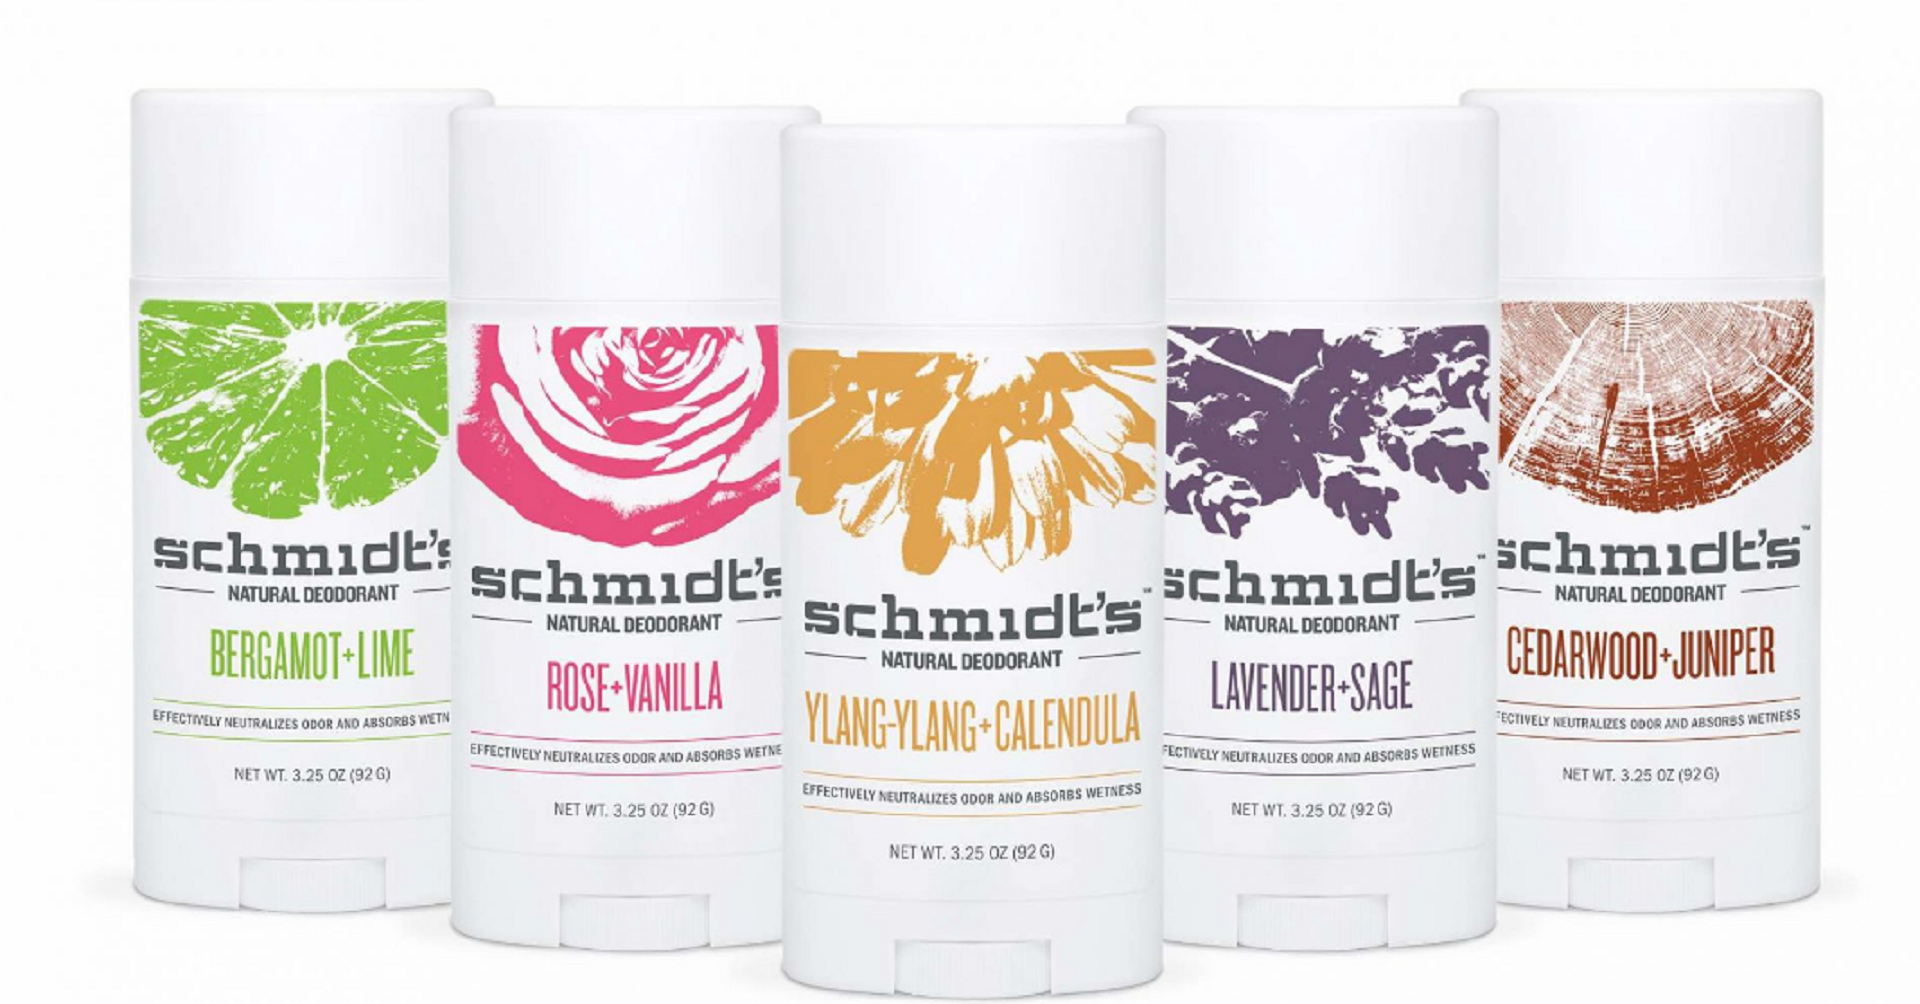 schmidt's deodorant